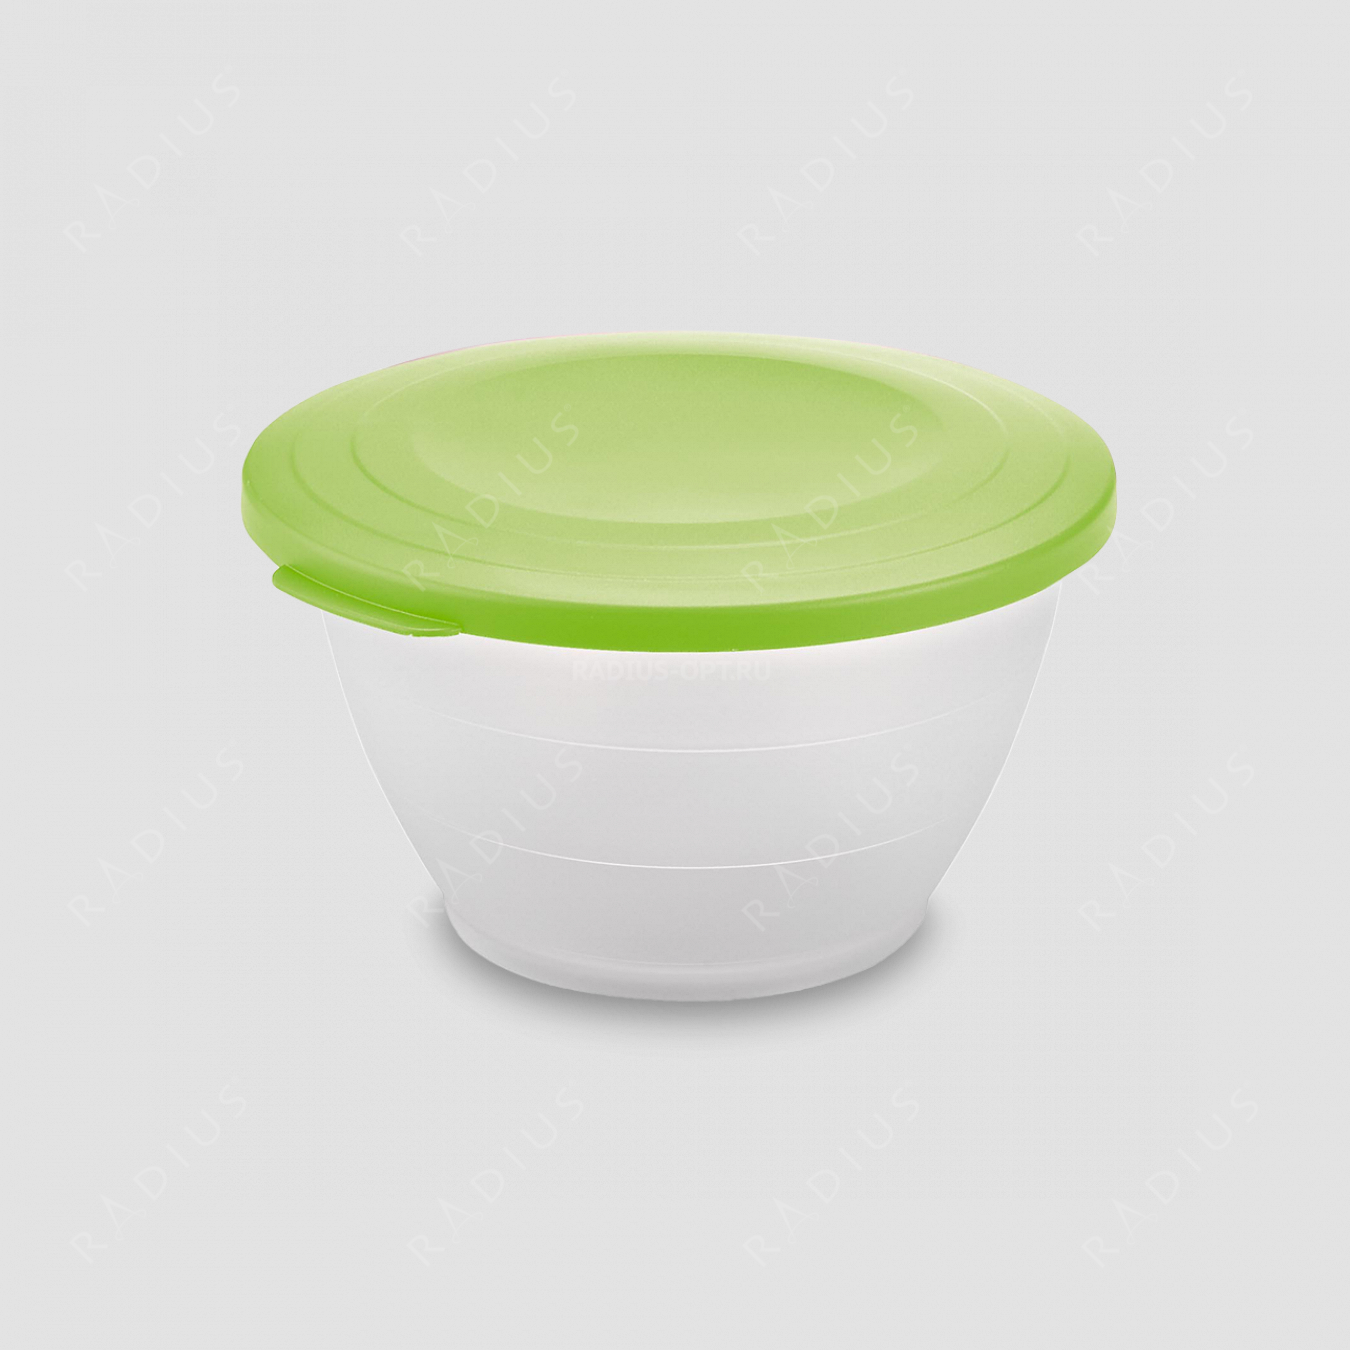 Емкость для салата с крышкой, объем 2,5 л, диаметр 21 см, цвет - зеленый, серия Plastic tools, Westmark, Германия